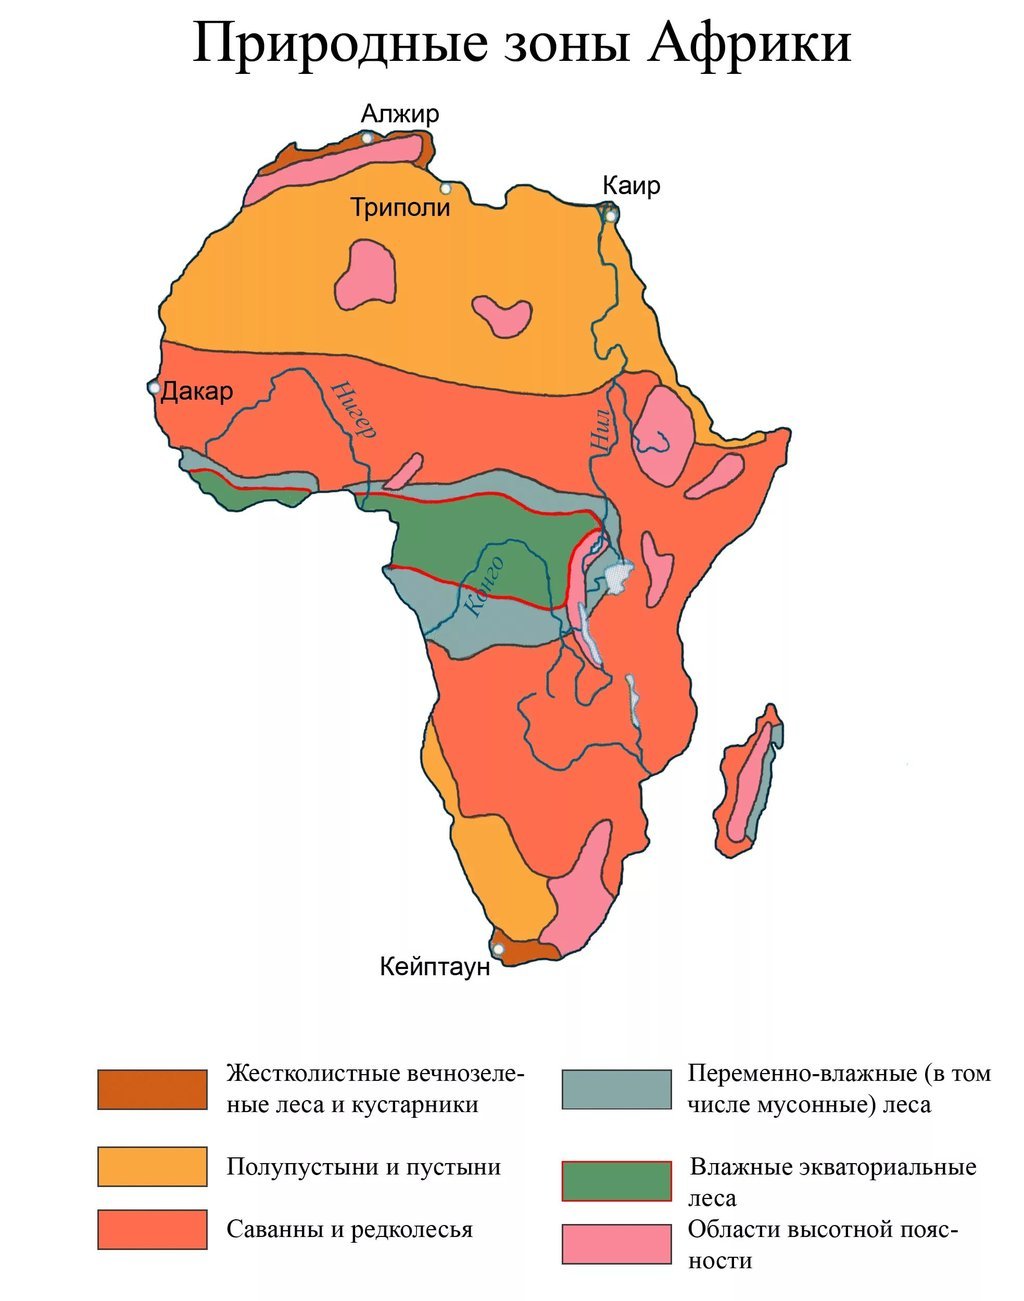 Три природные зоны африки. Карта природных зон Африки. Карта климатических зон Африки. Природная зона тропического пояса Африки. Зона саванн и редколесий в Африке на карте.